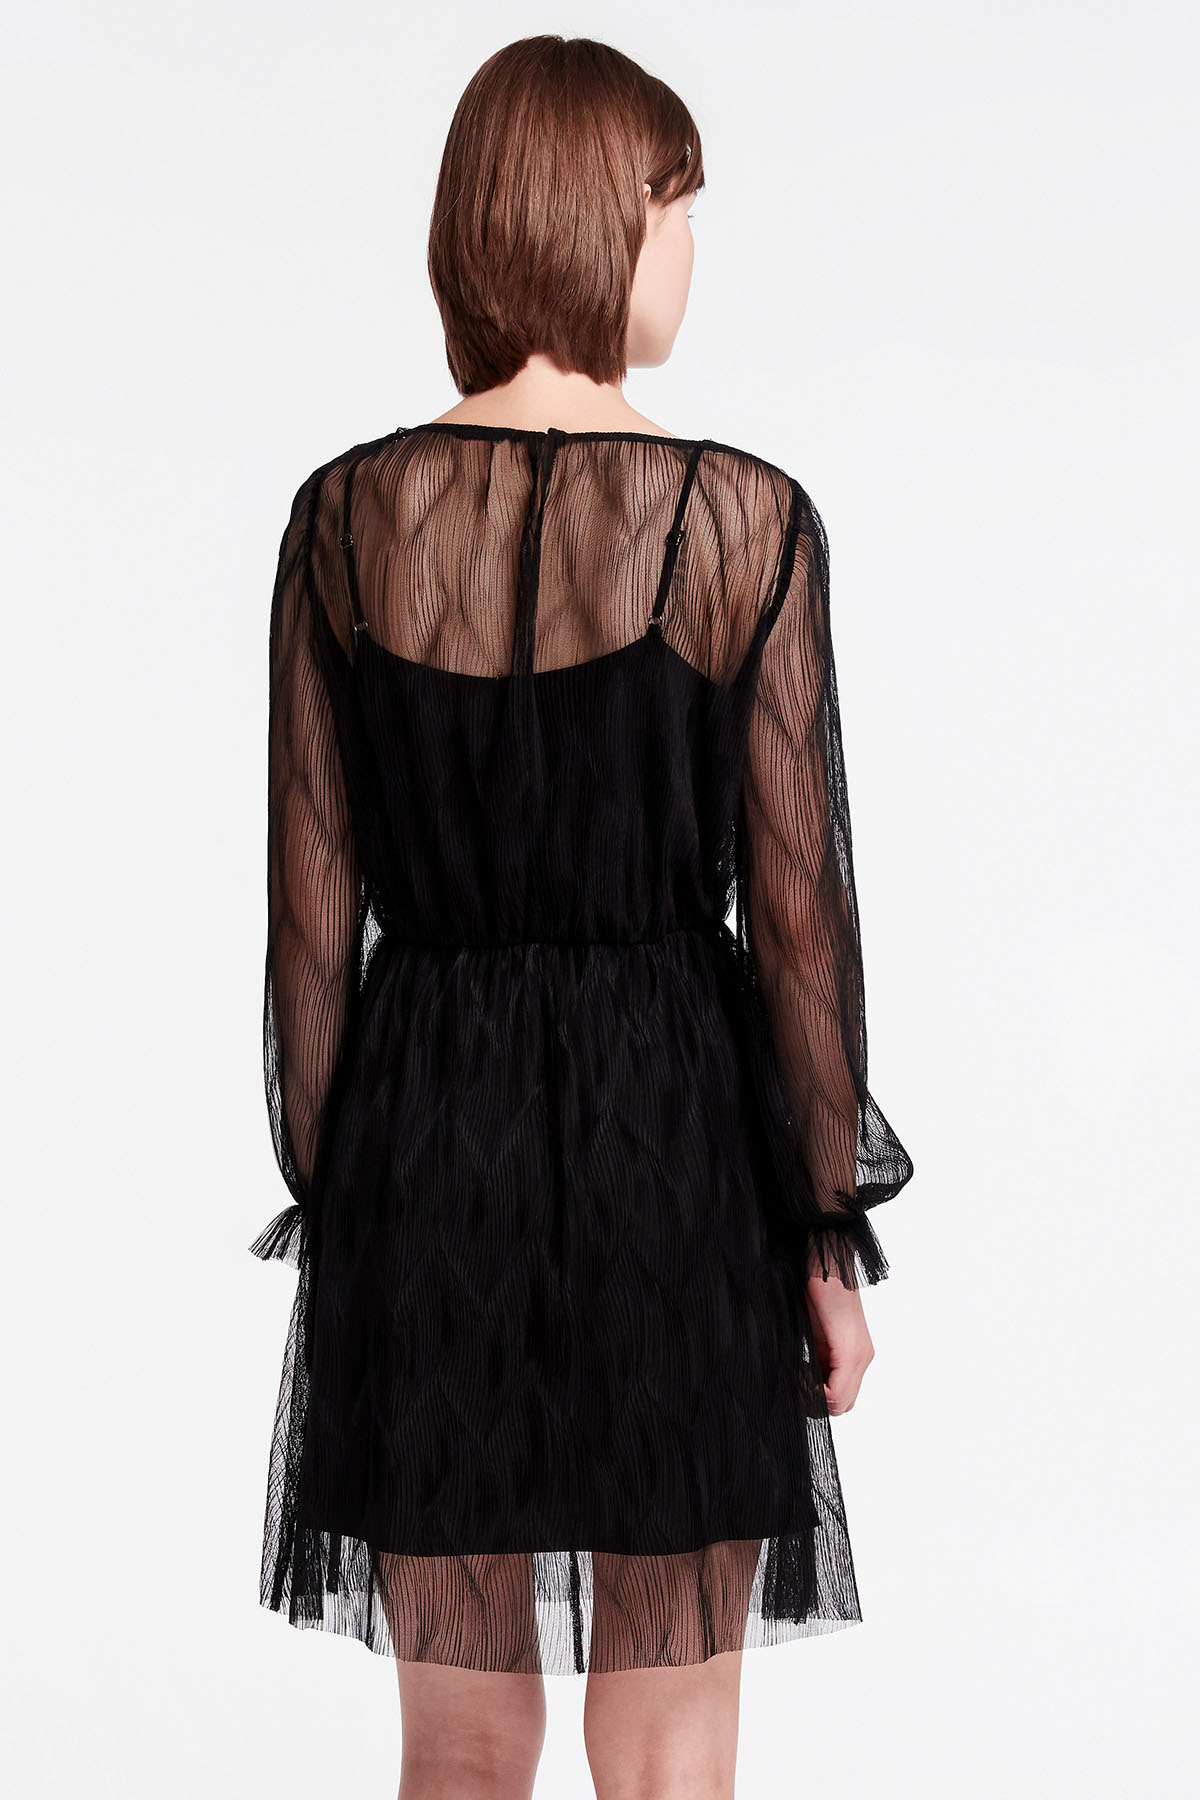 Black lace mini dress, photo 7